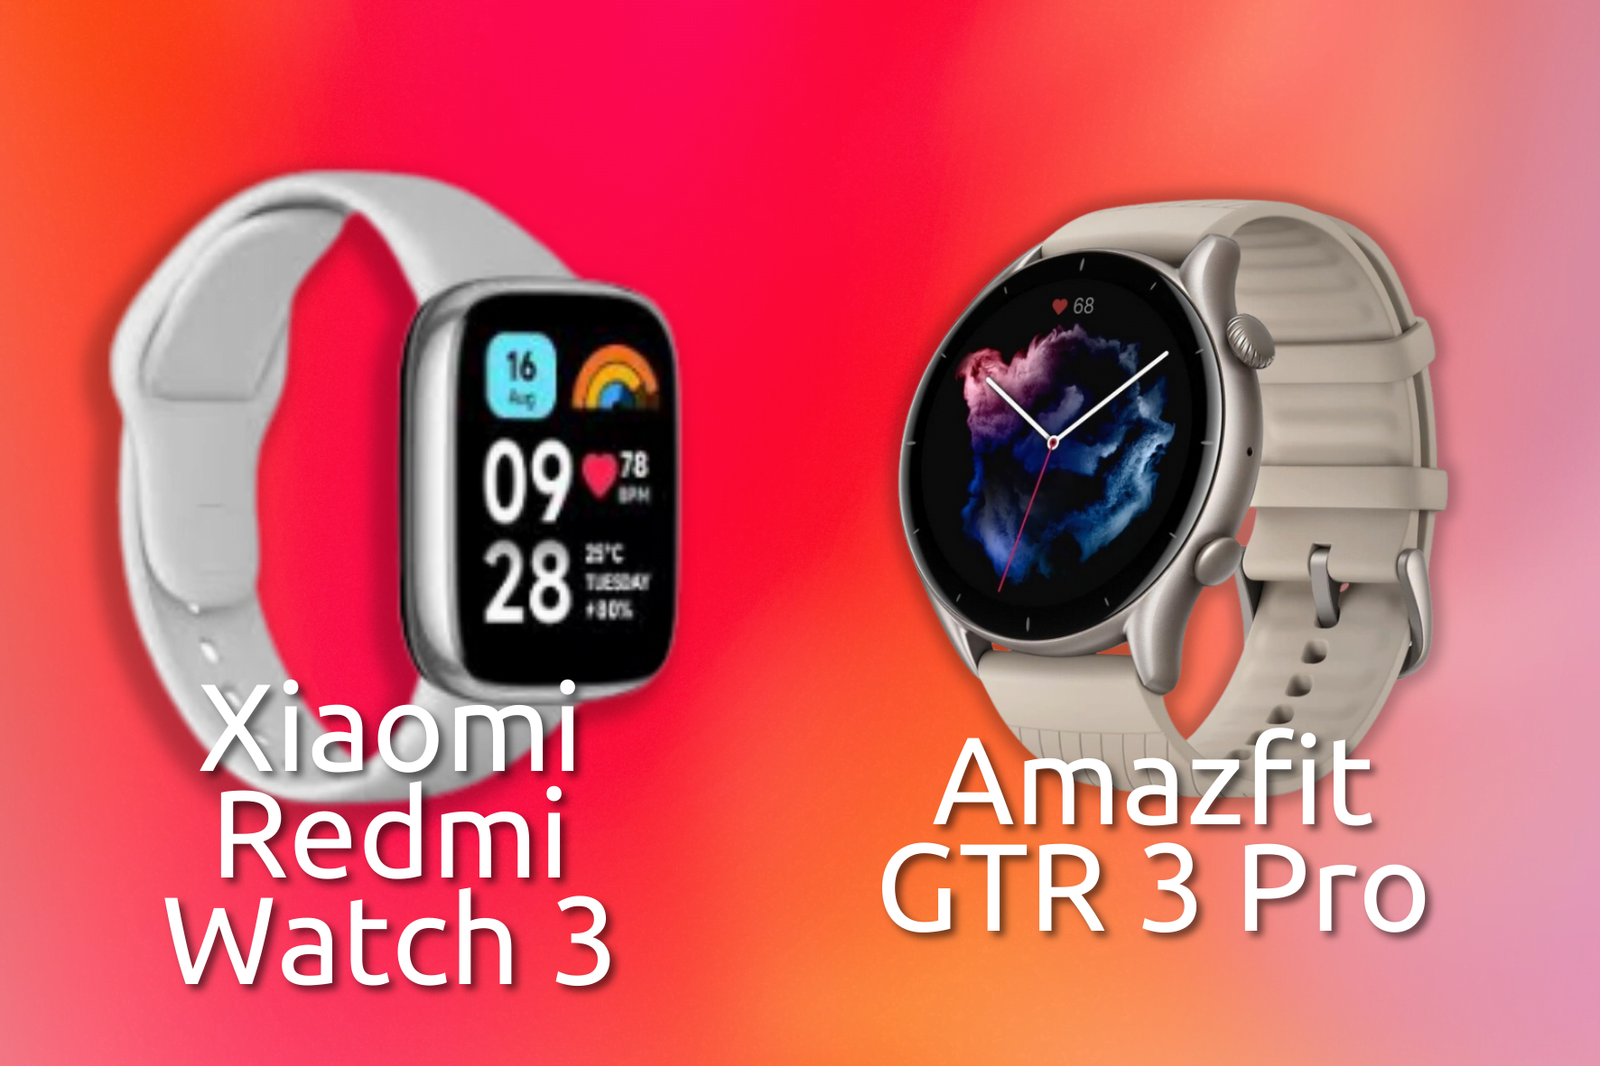 Redmi Watch 4 vs Redmi Watch 3: Comparación Detallada y